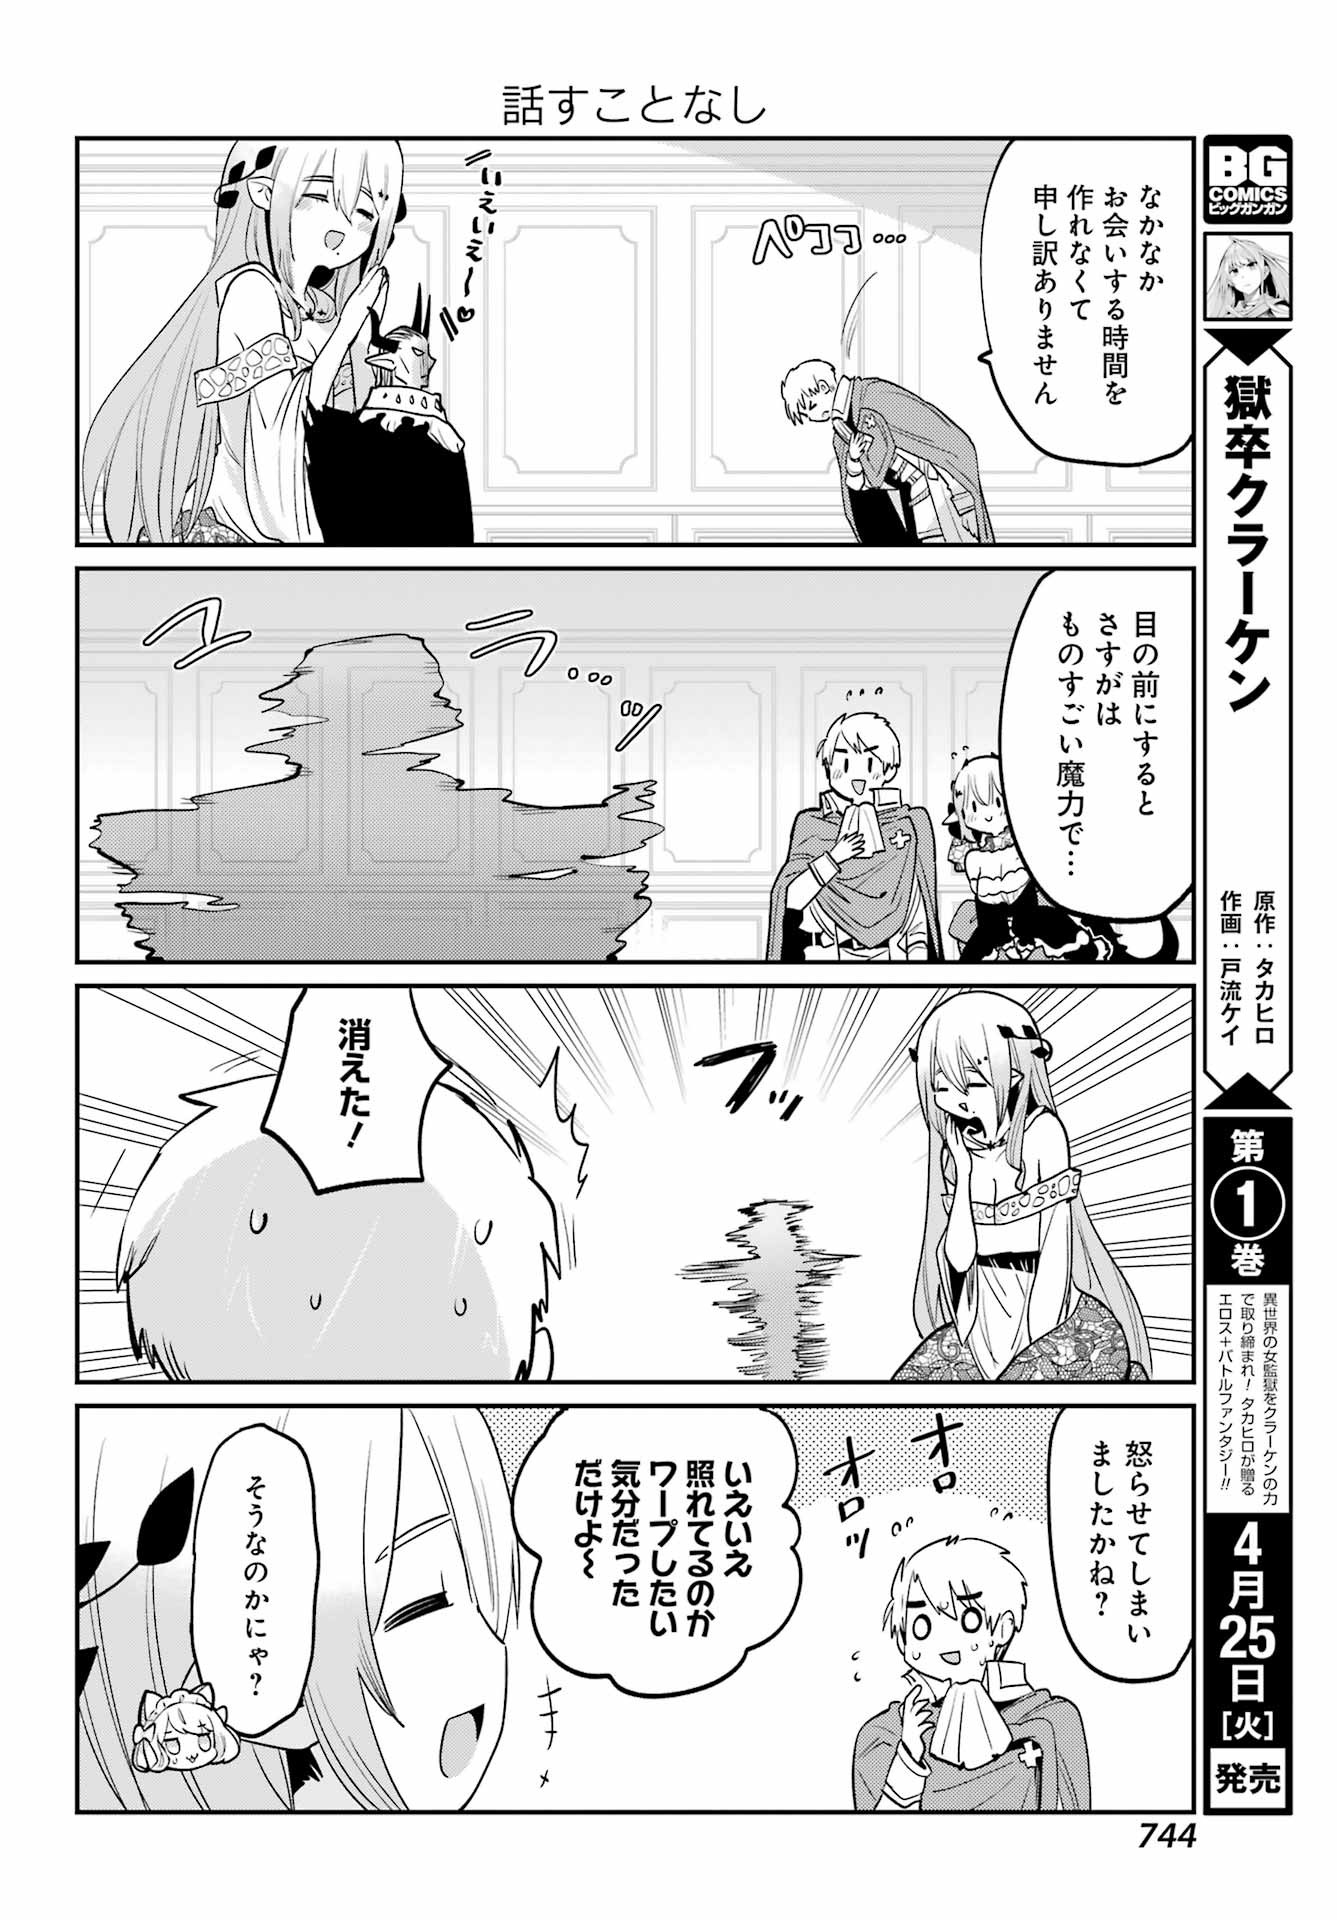 Boku no Dokuhime wa Kyou mo Kawaii - Chapter 29 - Page 4